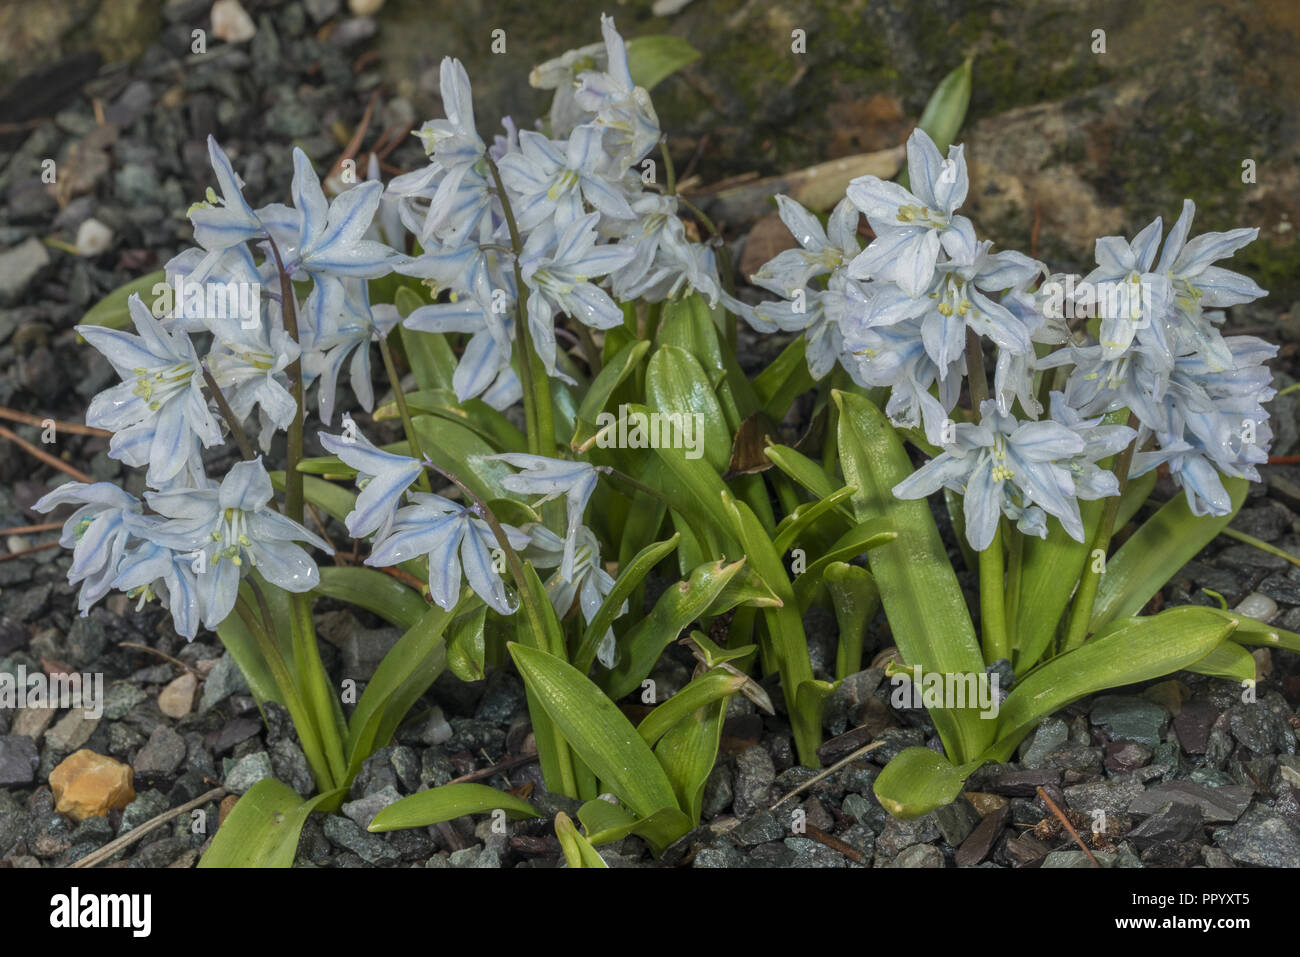 Scilla mischtschenkoana - Frühling - Blühende bauchige Pflanze aus dem südlichen Kaukasus. Stockfoto